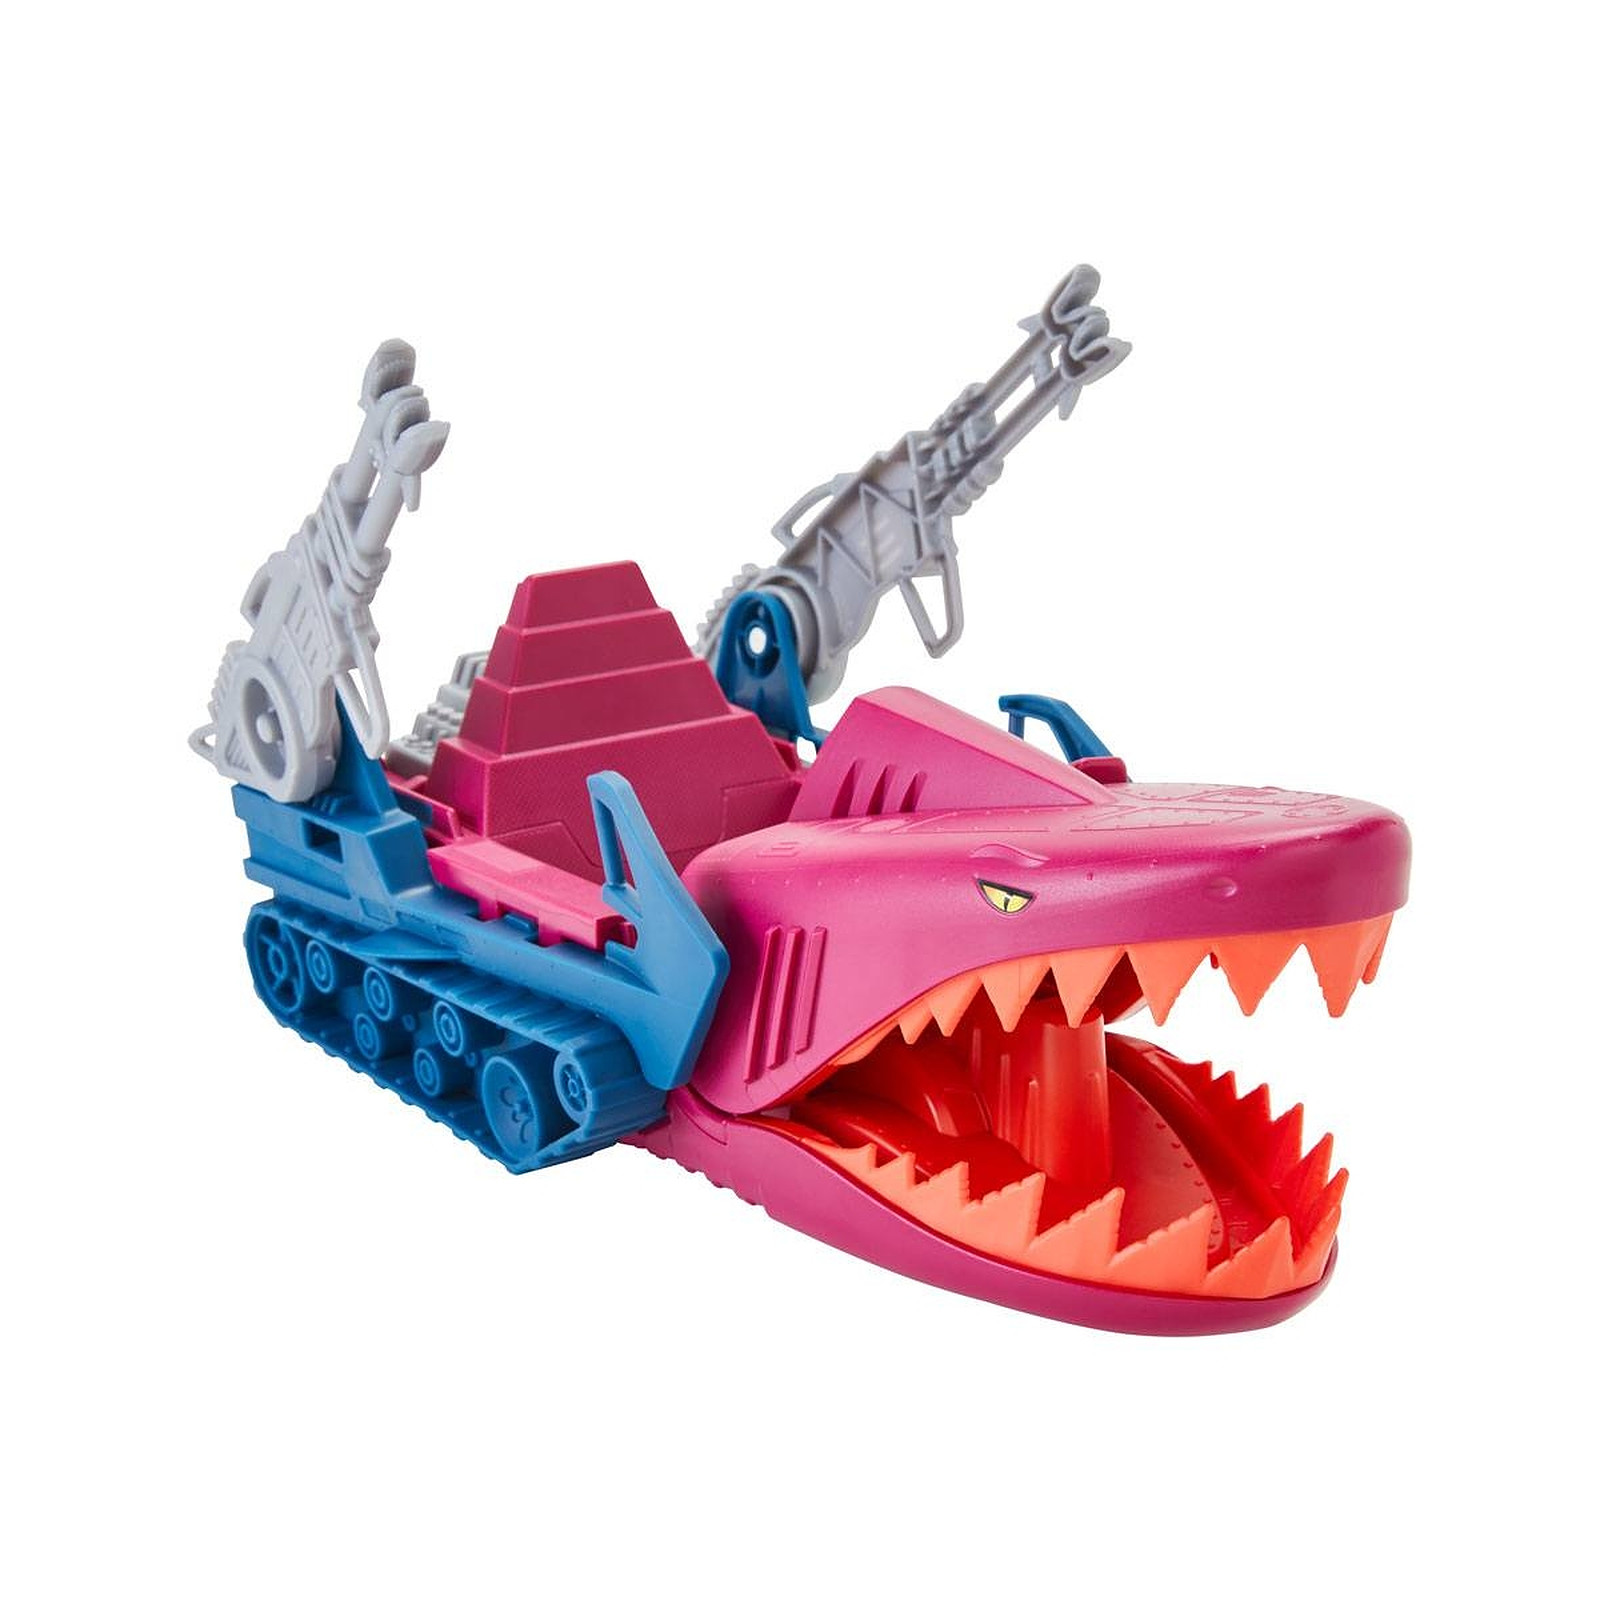 Les Maitres de l'Univers Origins 2021 - Vehicule Land Shark 32 cm - Figurines Mattel